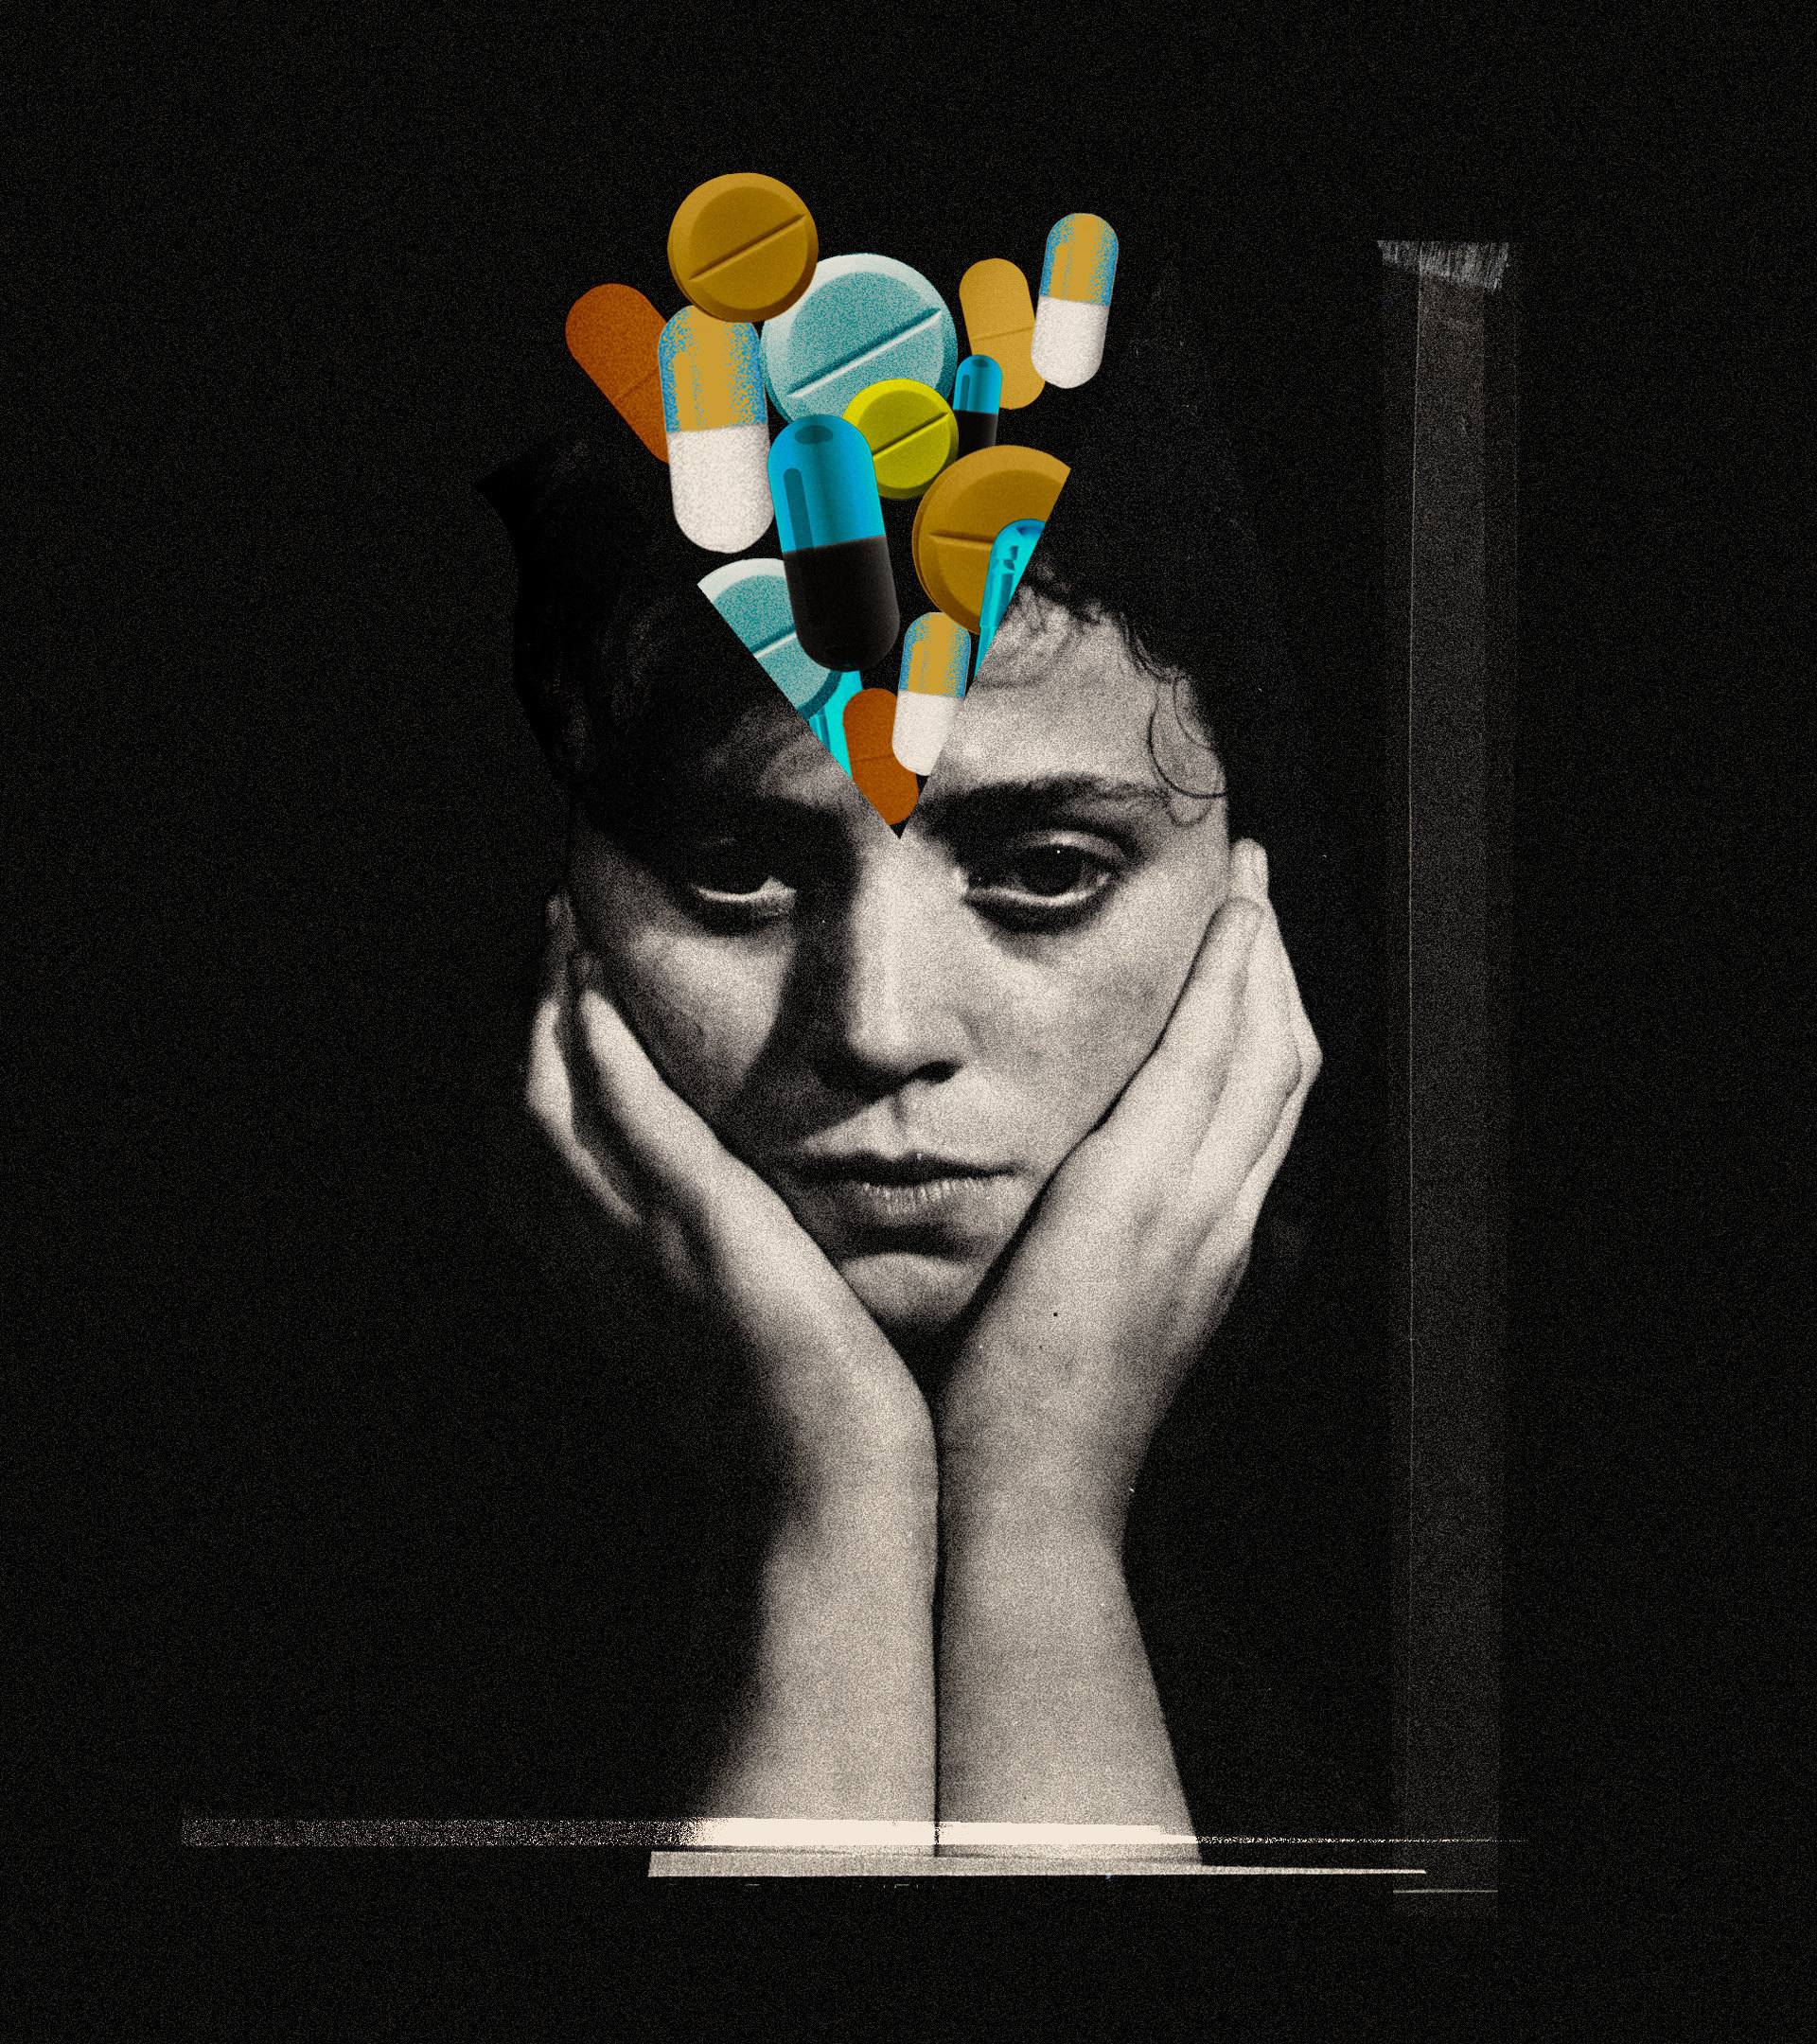 El turbio negocio de las enfermedades mentales: así se disparó el consumo de psicofármacos en EEUU